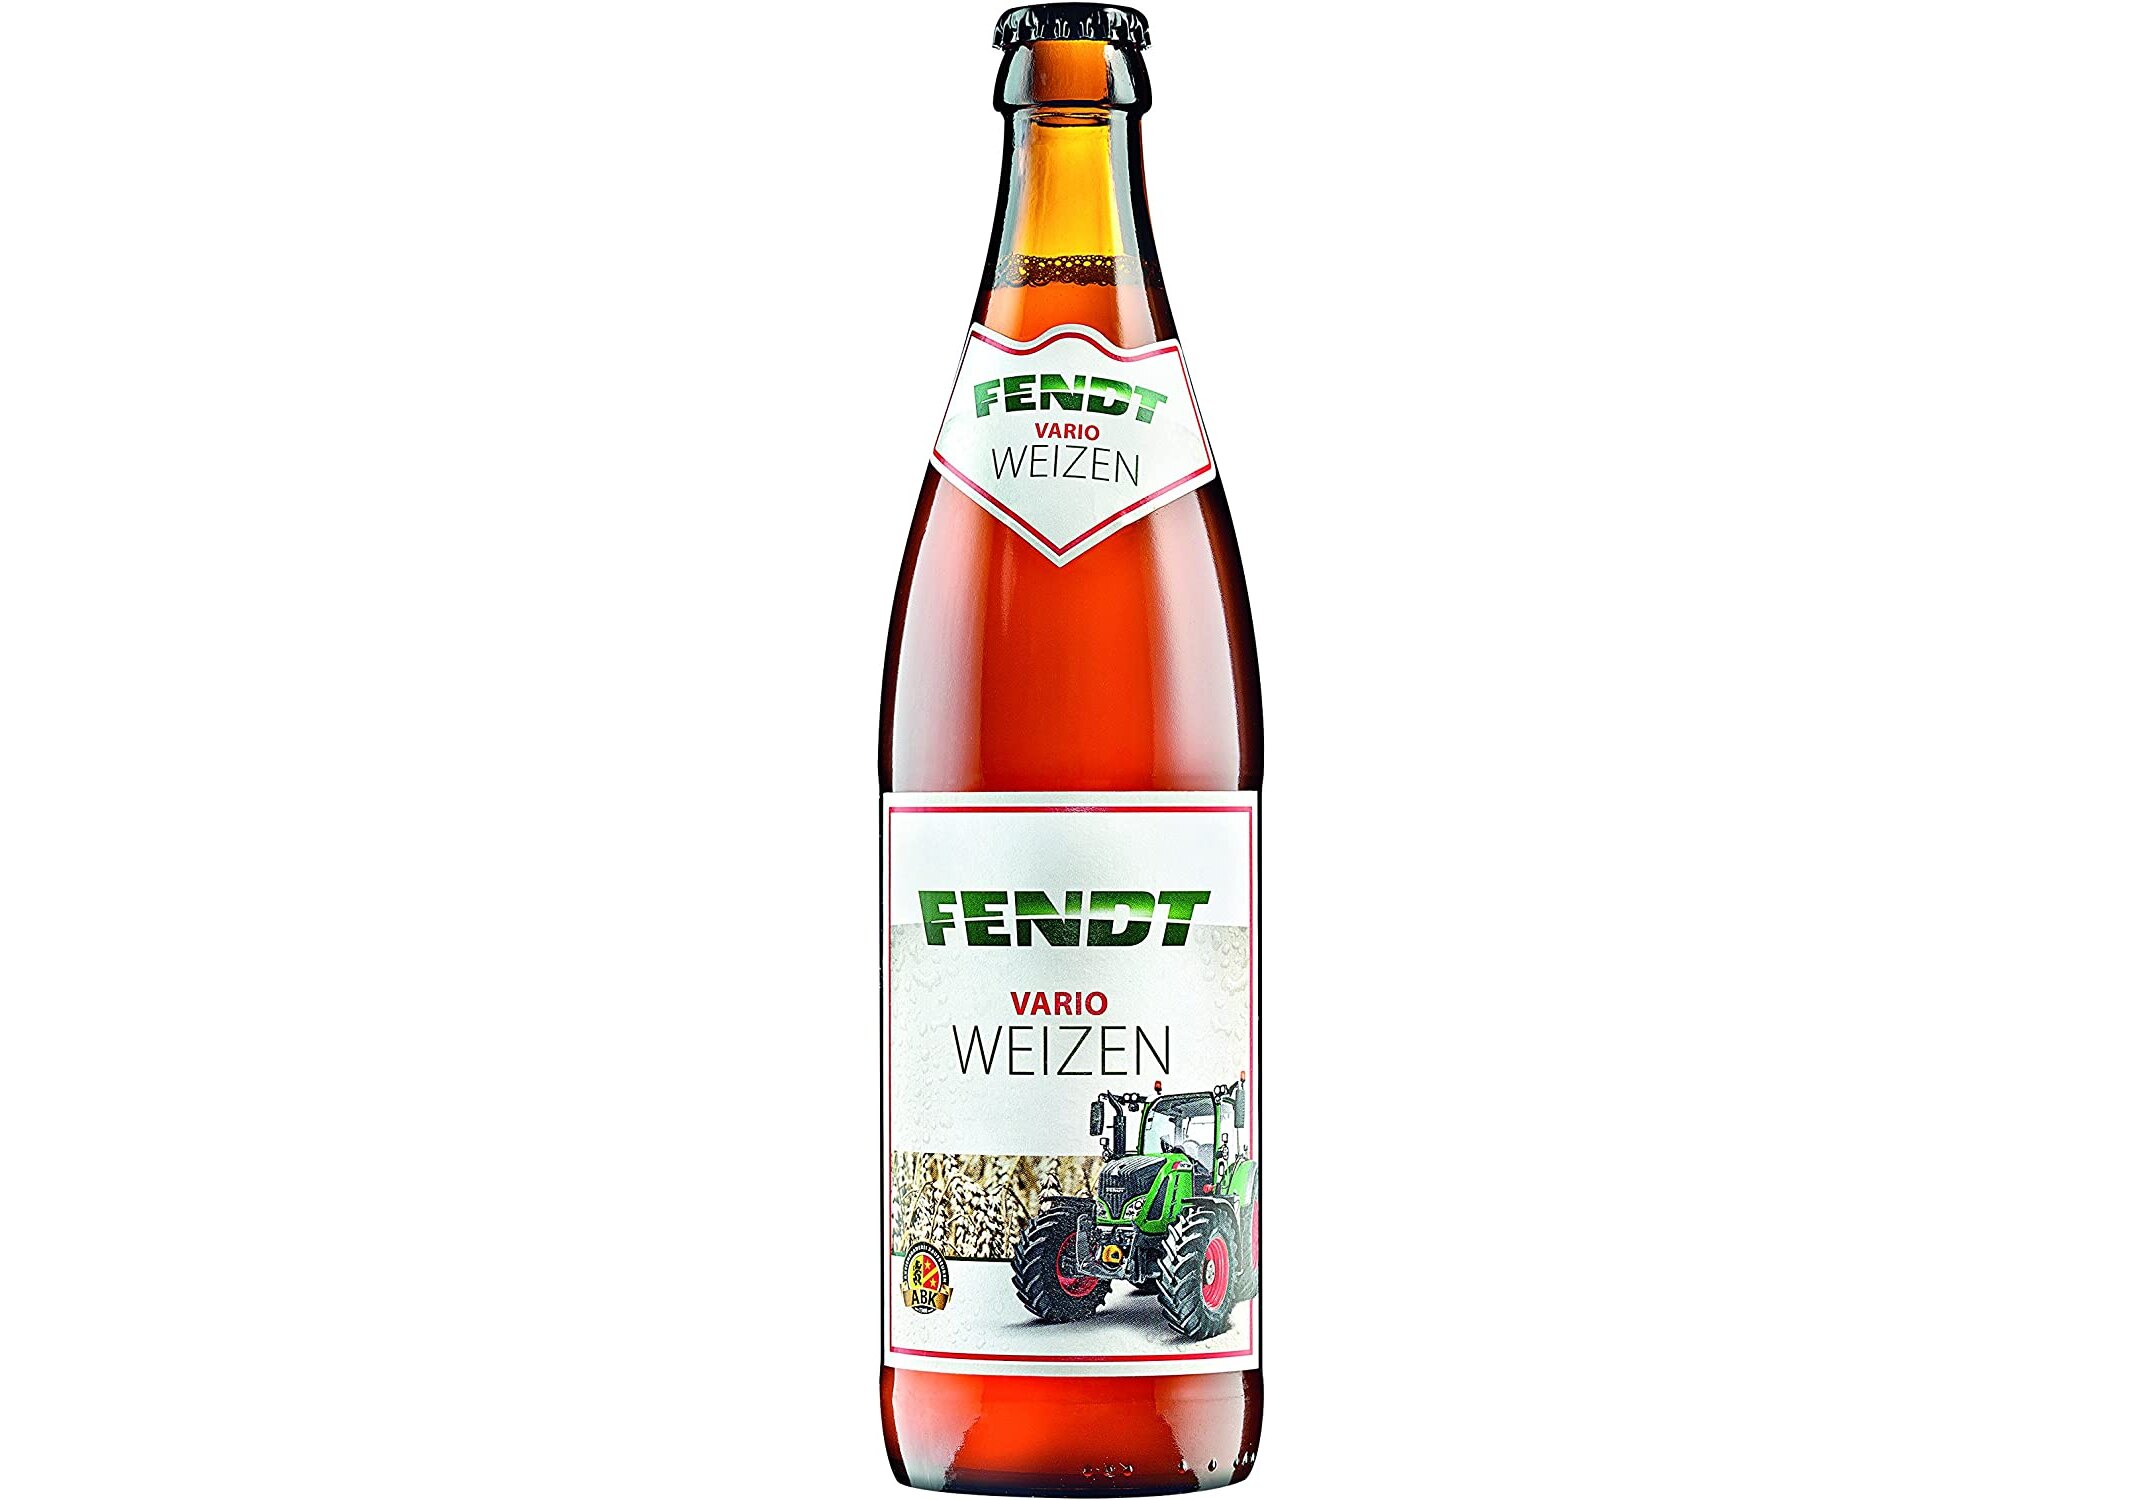 Lebensmittel & Getränke :: Bier, Wein & Spirituosen :: Bier :: Helles ::  Fendt Vario Weizen - 18 Flaschen in einem Karton -  -  Ökologische Produkte online kaufen.